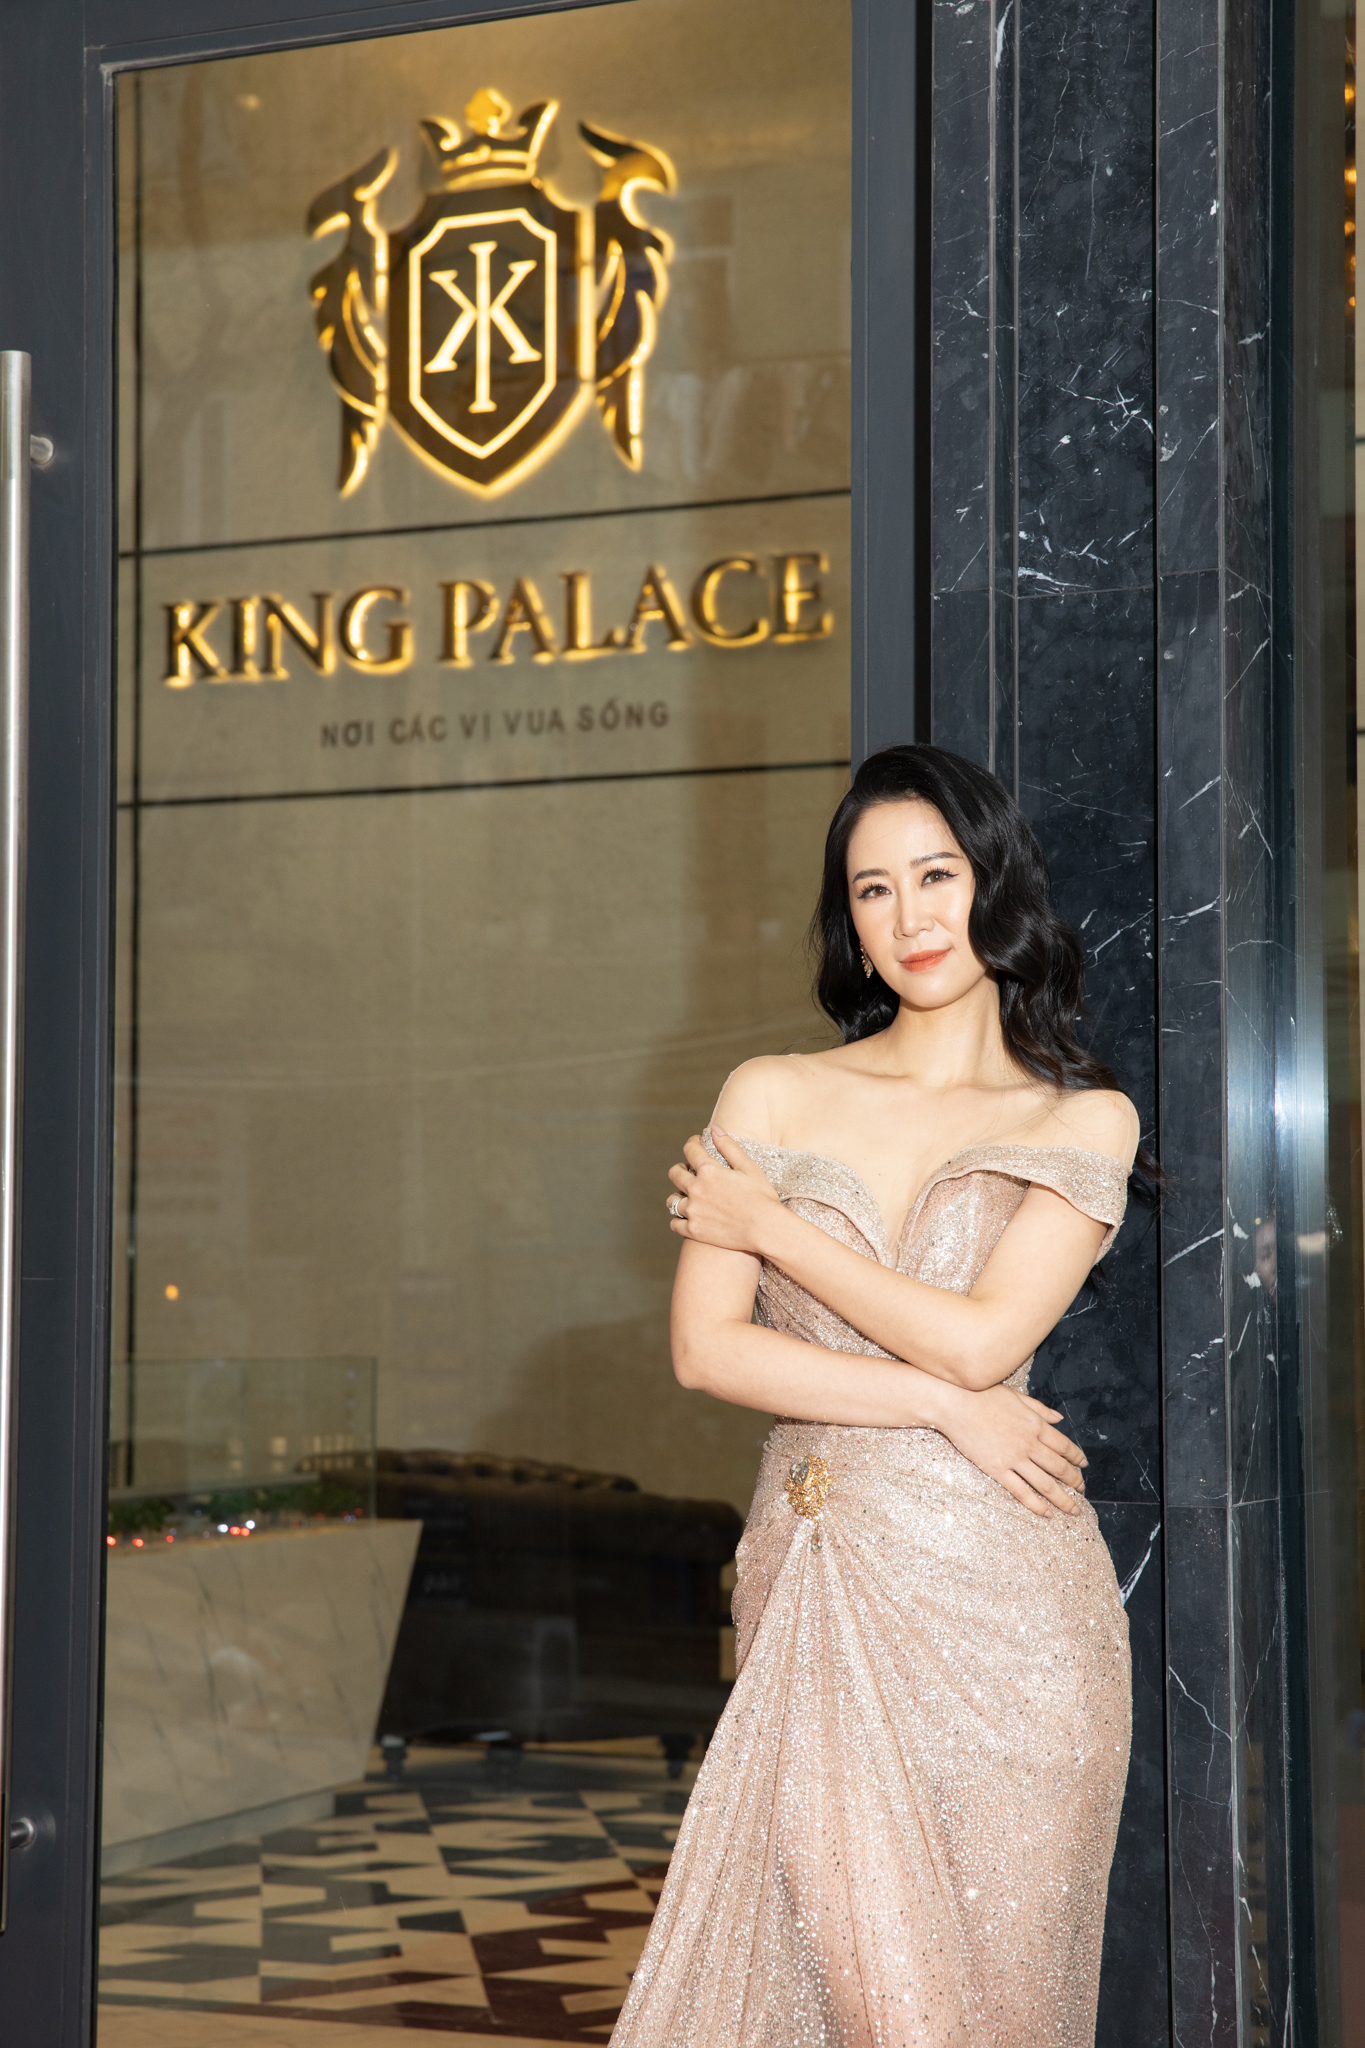 Read more about the article “Nơi các vị Vua sống” đã hấp dẫn Hoa hậu Dương Thùy Linh như thế nào?